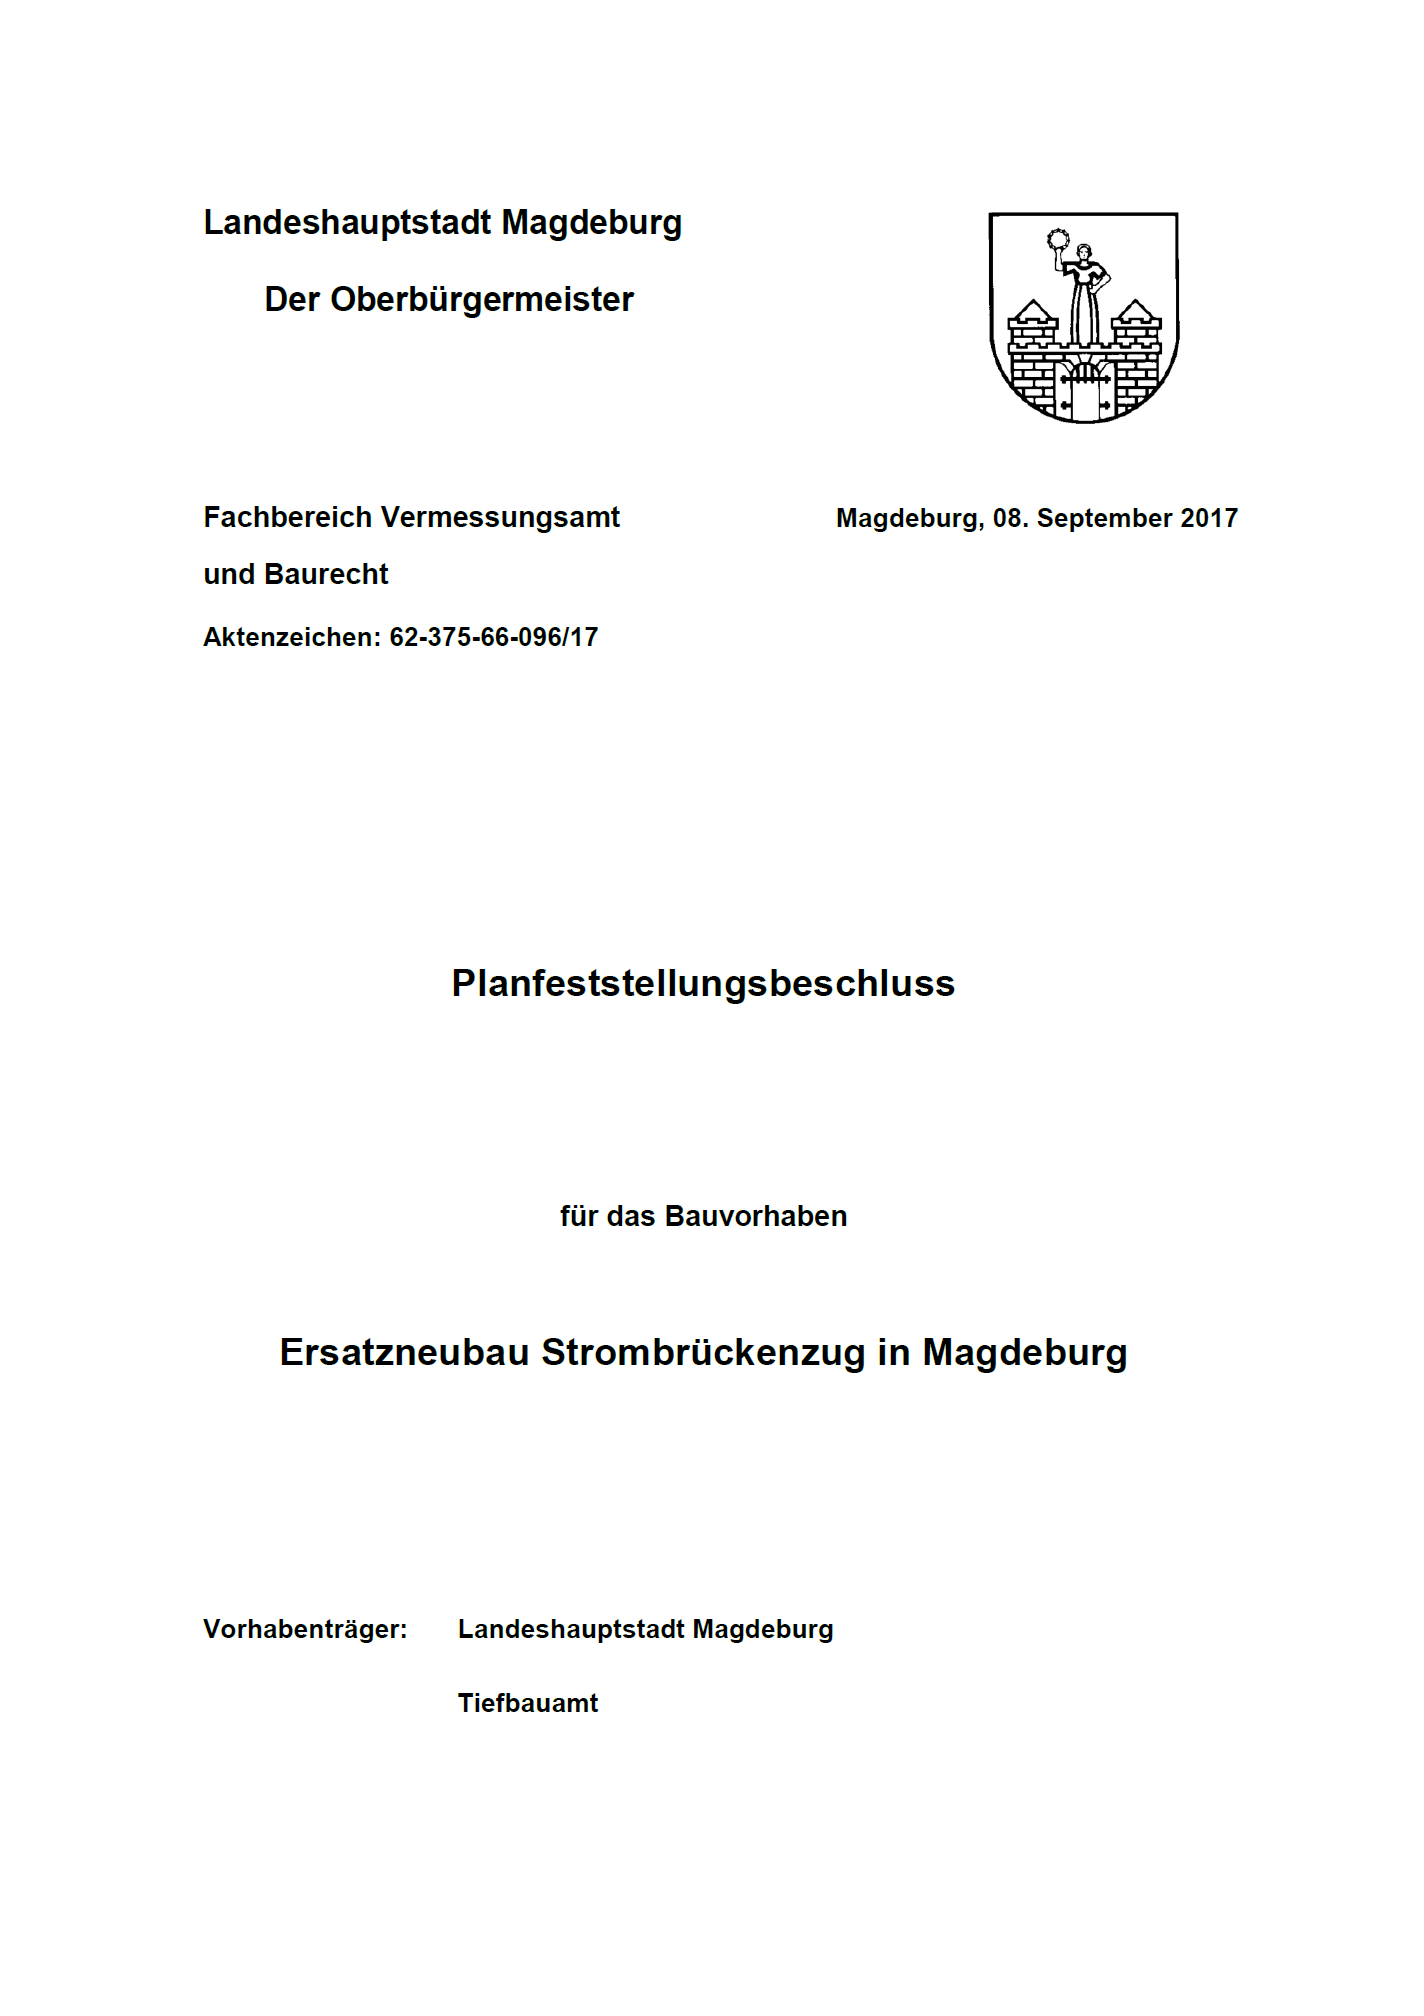 Das Deckblatt des Planfeststellungsbeschlusses aus 2017